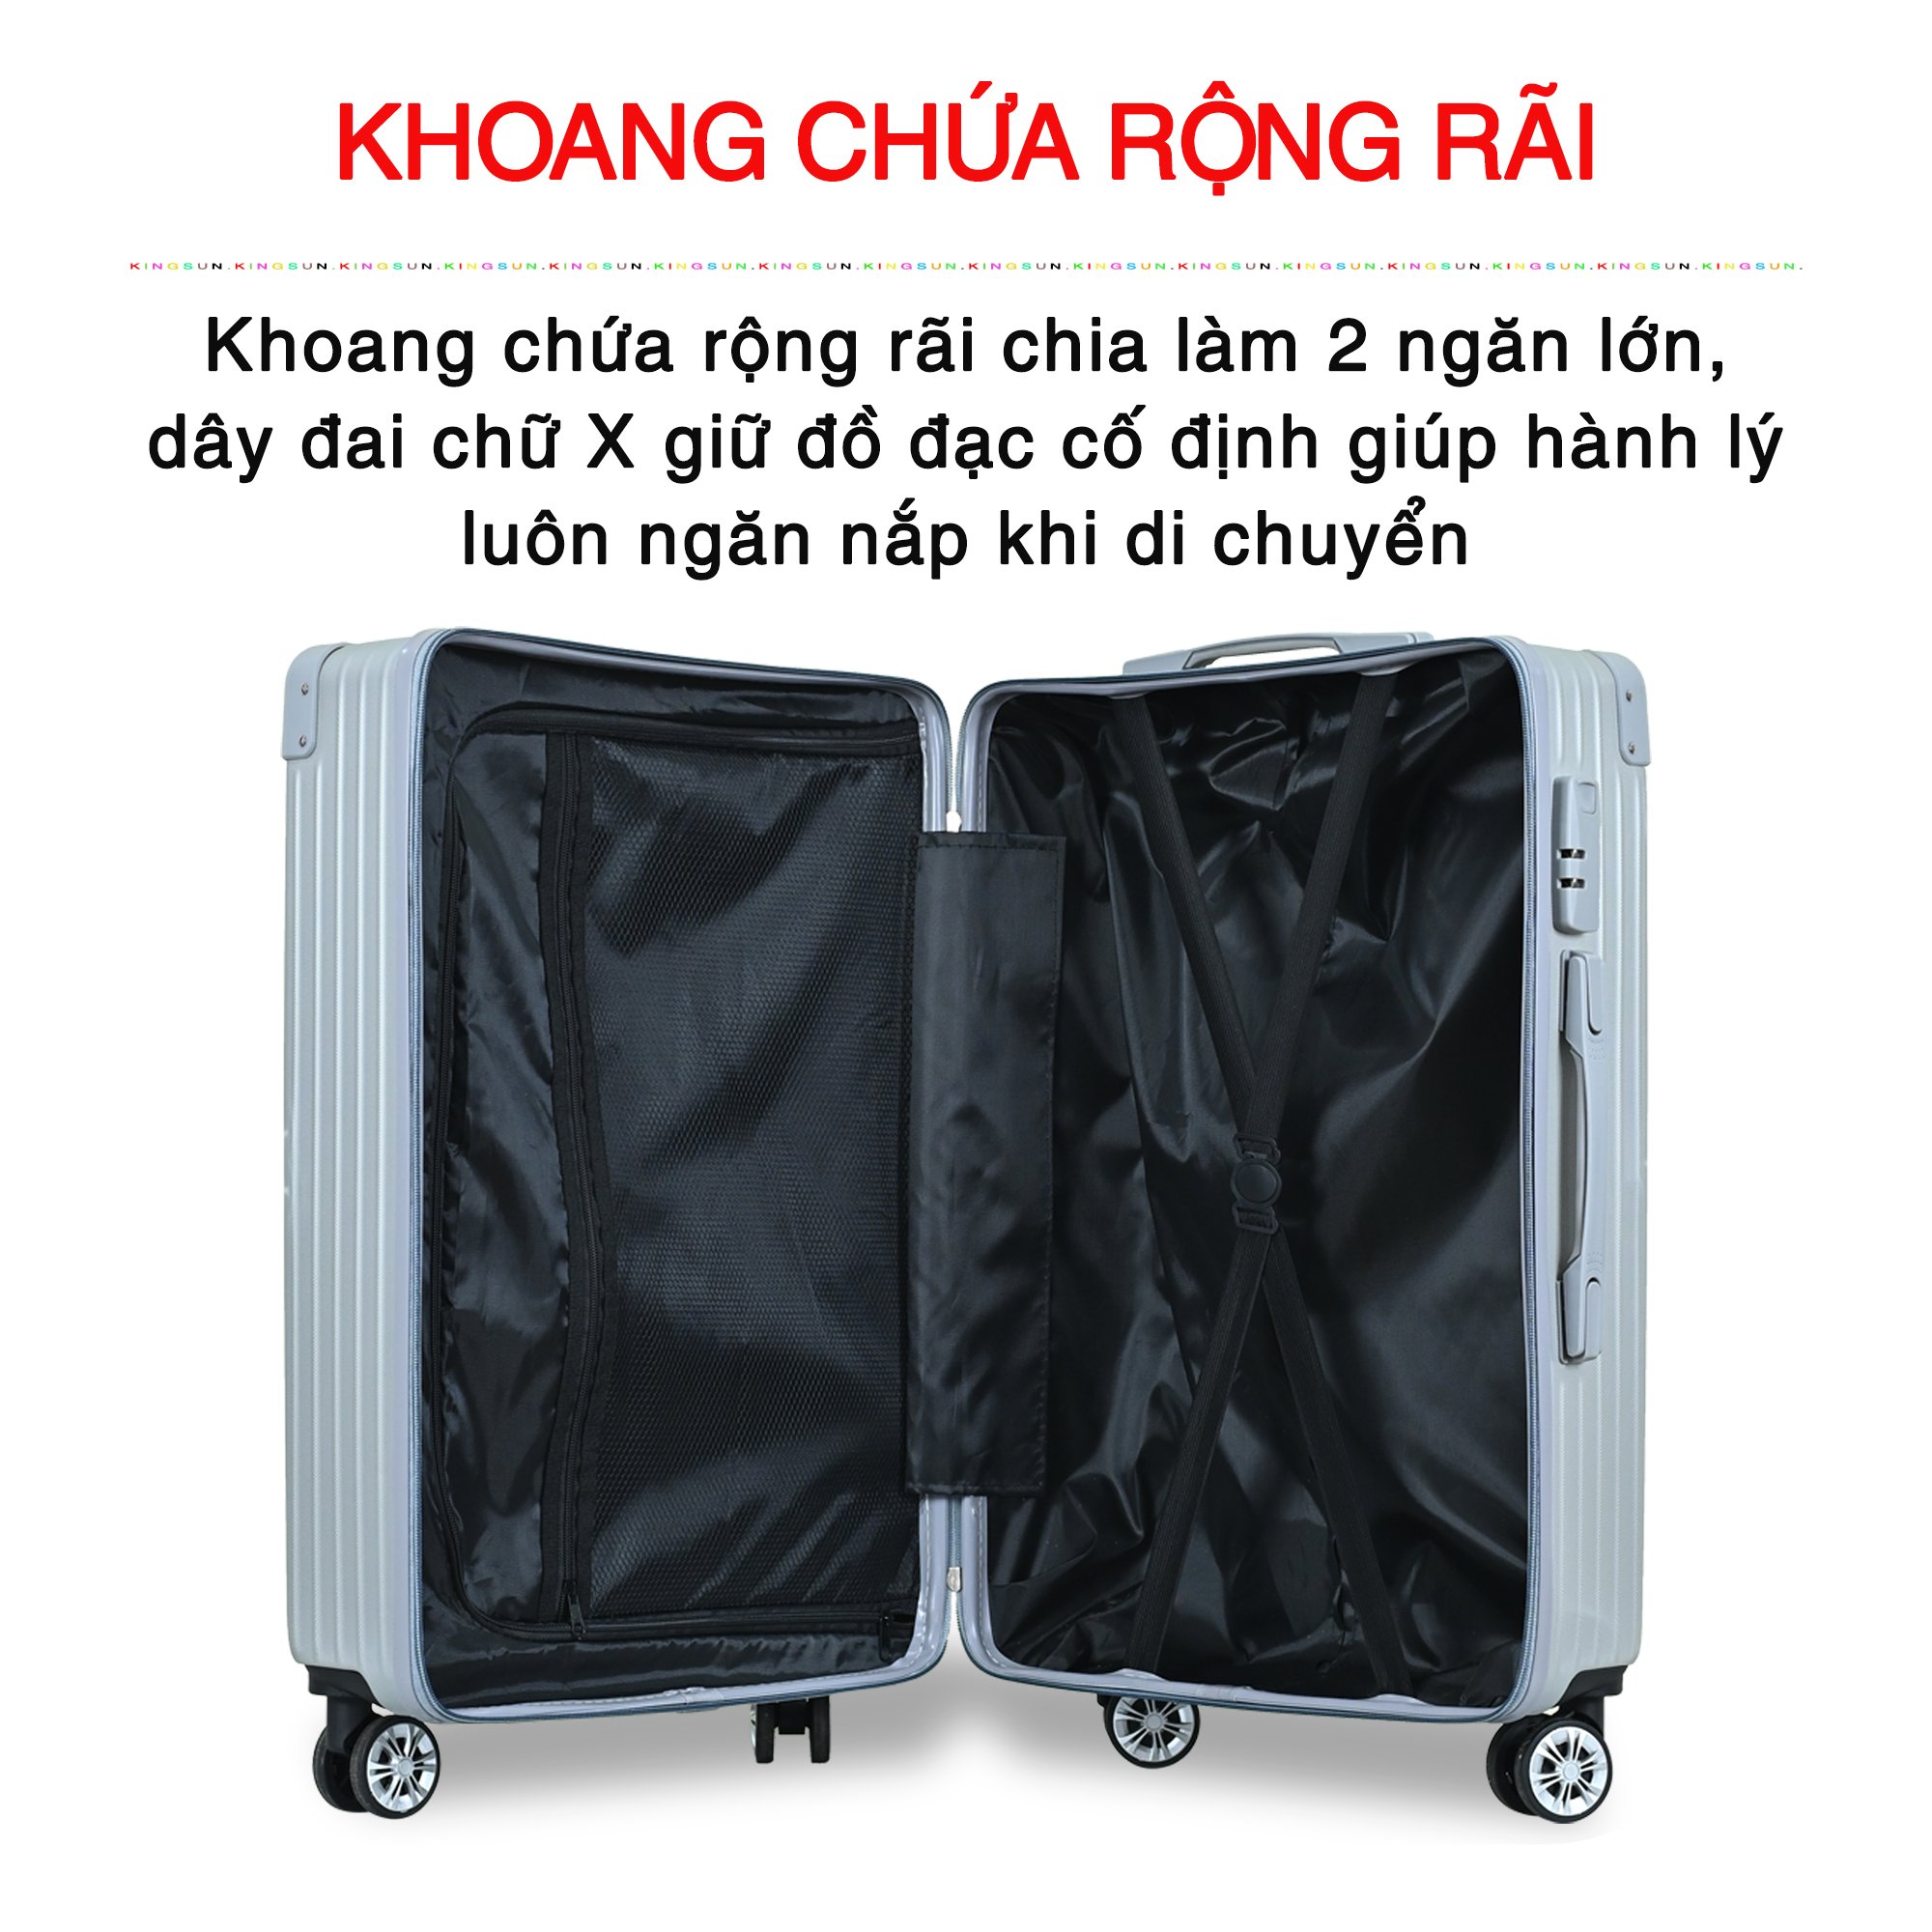 Vali du lịch kéo cao cấp độc quyền chính hãng Size 20inch KS-218 - Xanh lam nhạt